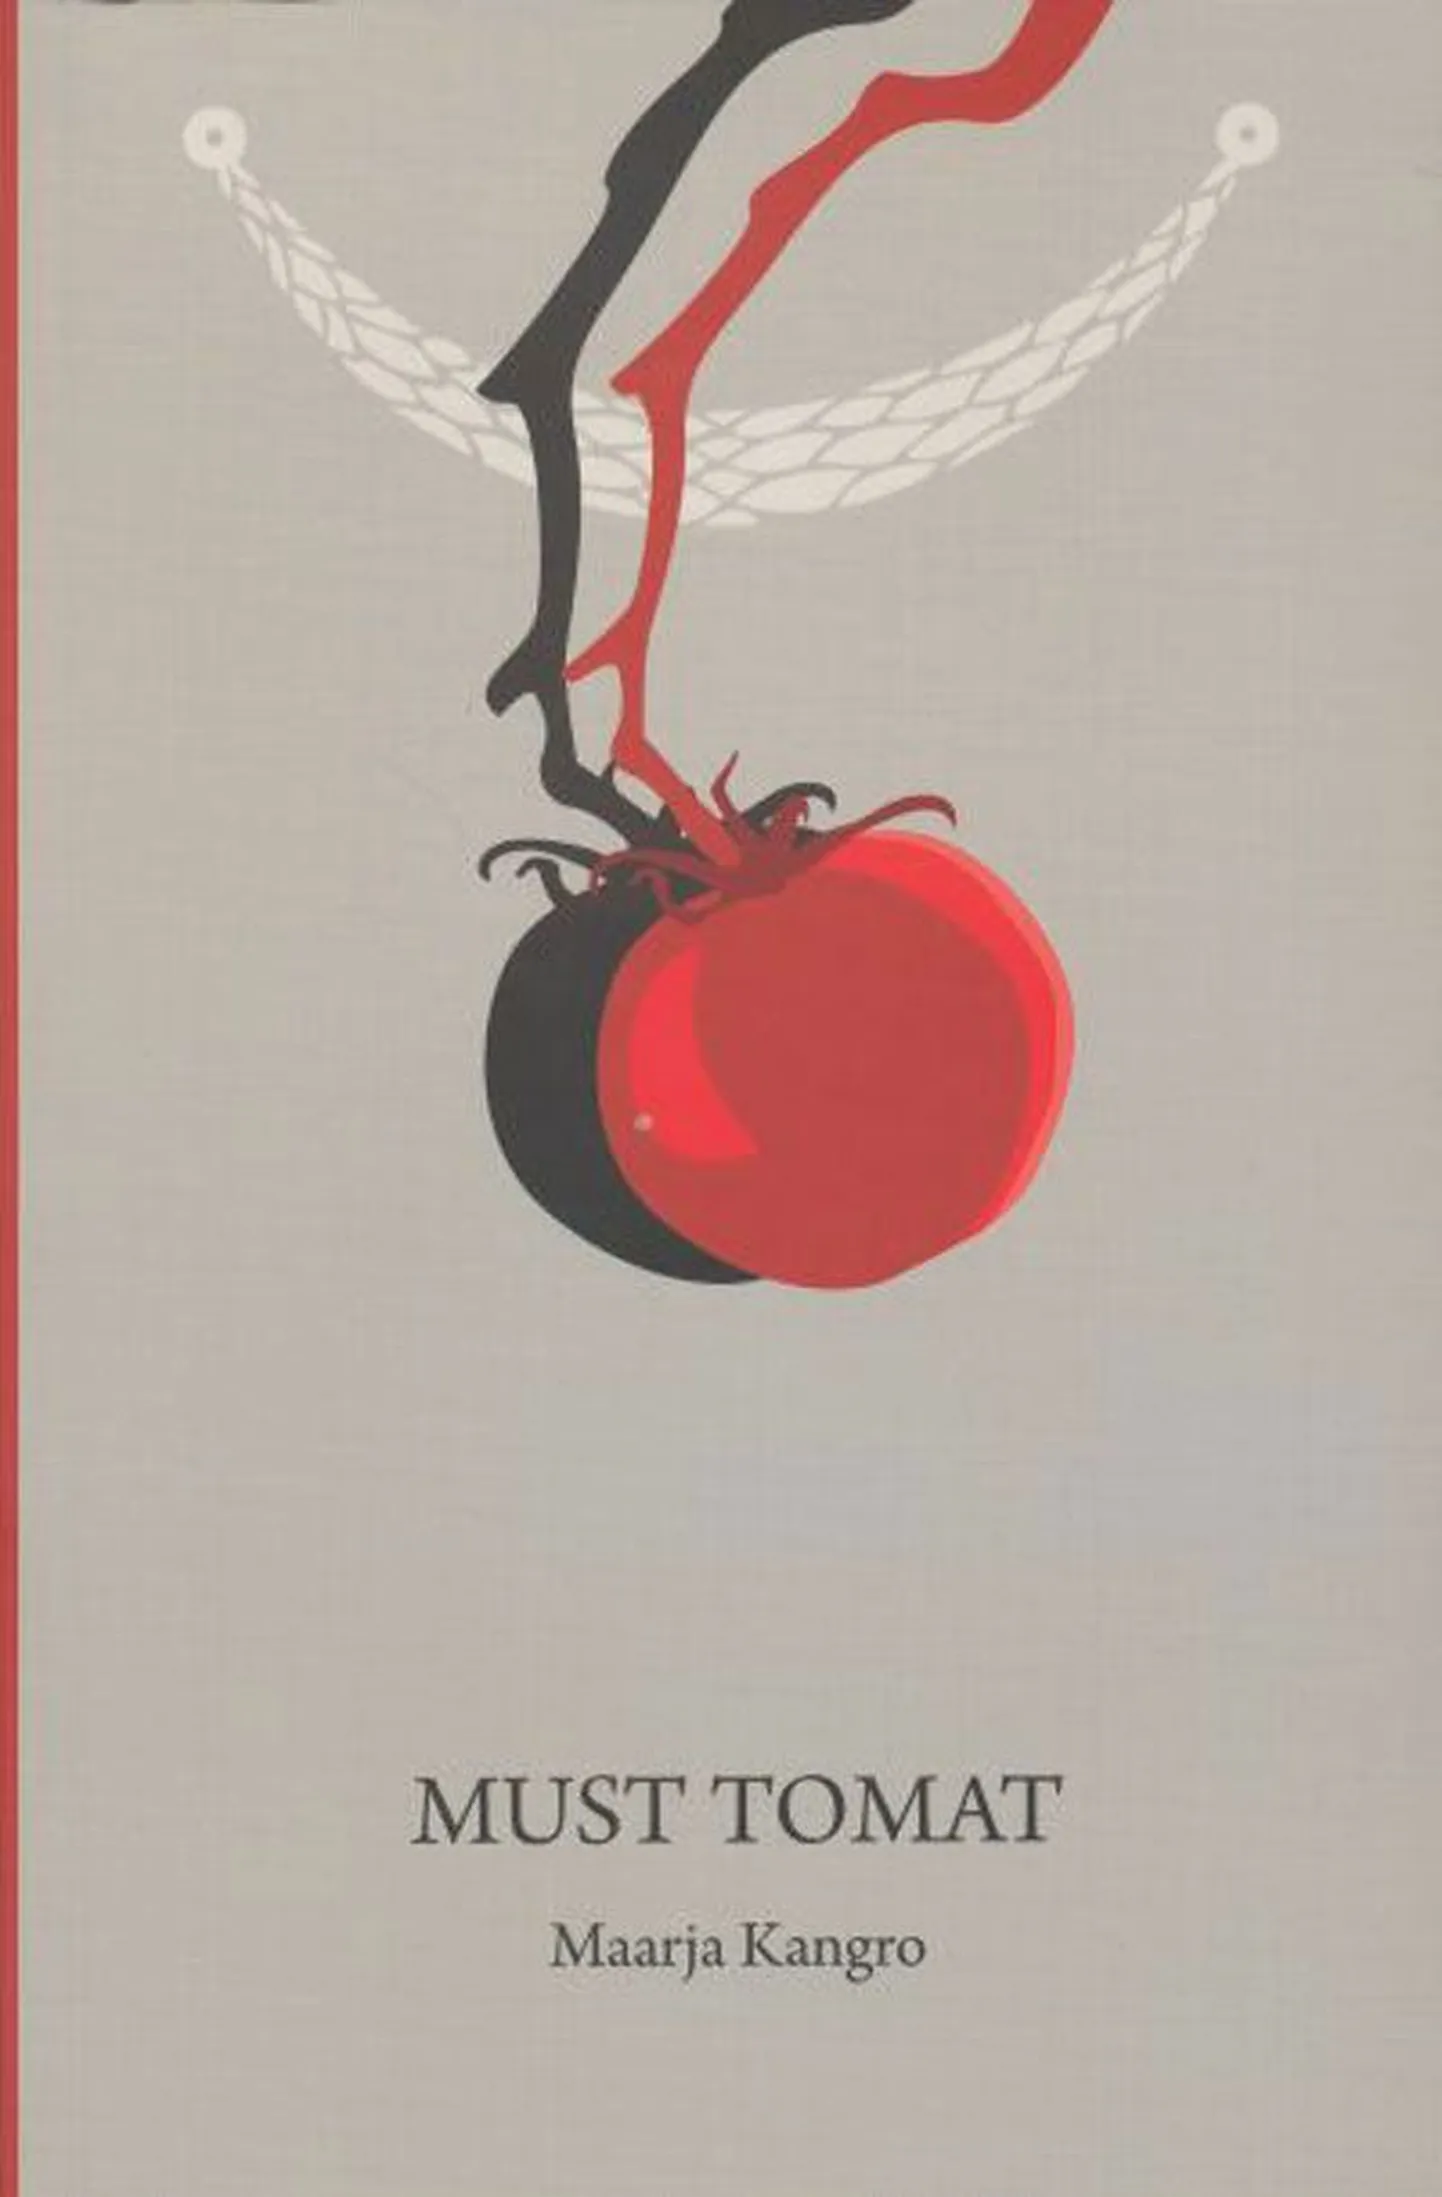 Raamat
Maarja Kangro
«Must tomat»
Eesti Keele Sihtasutus 2013